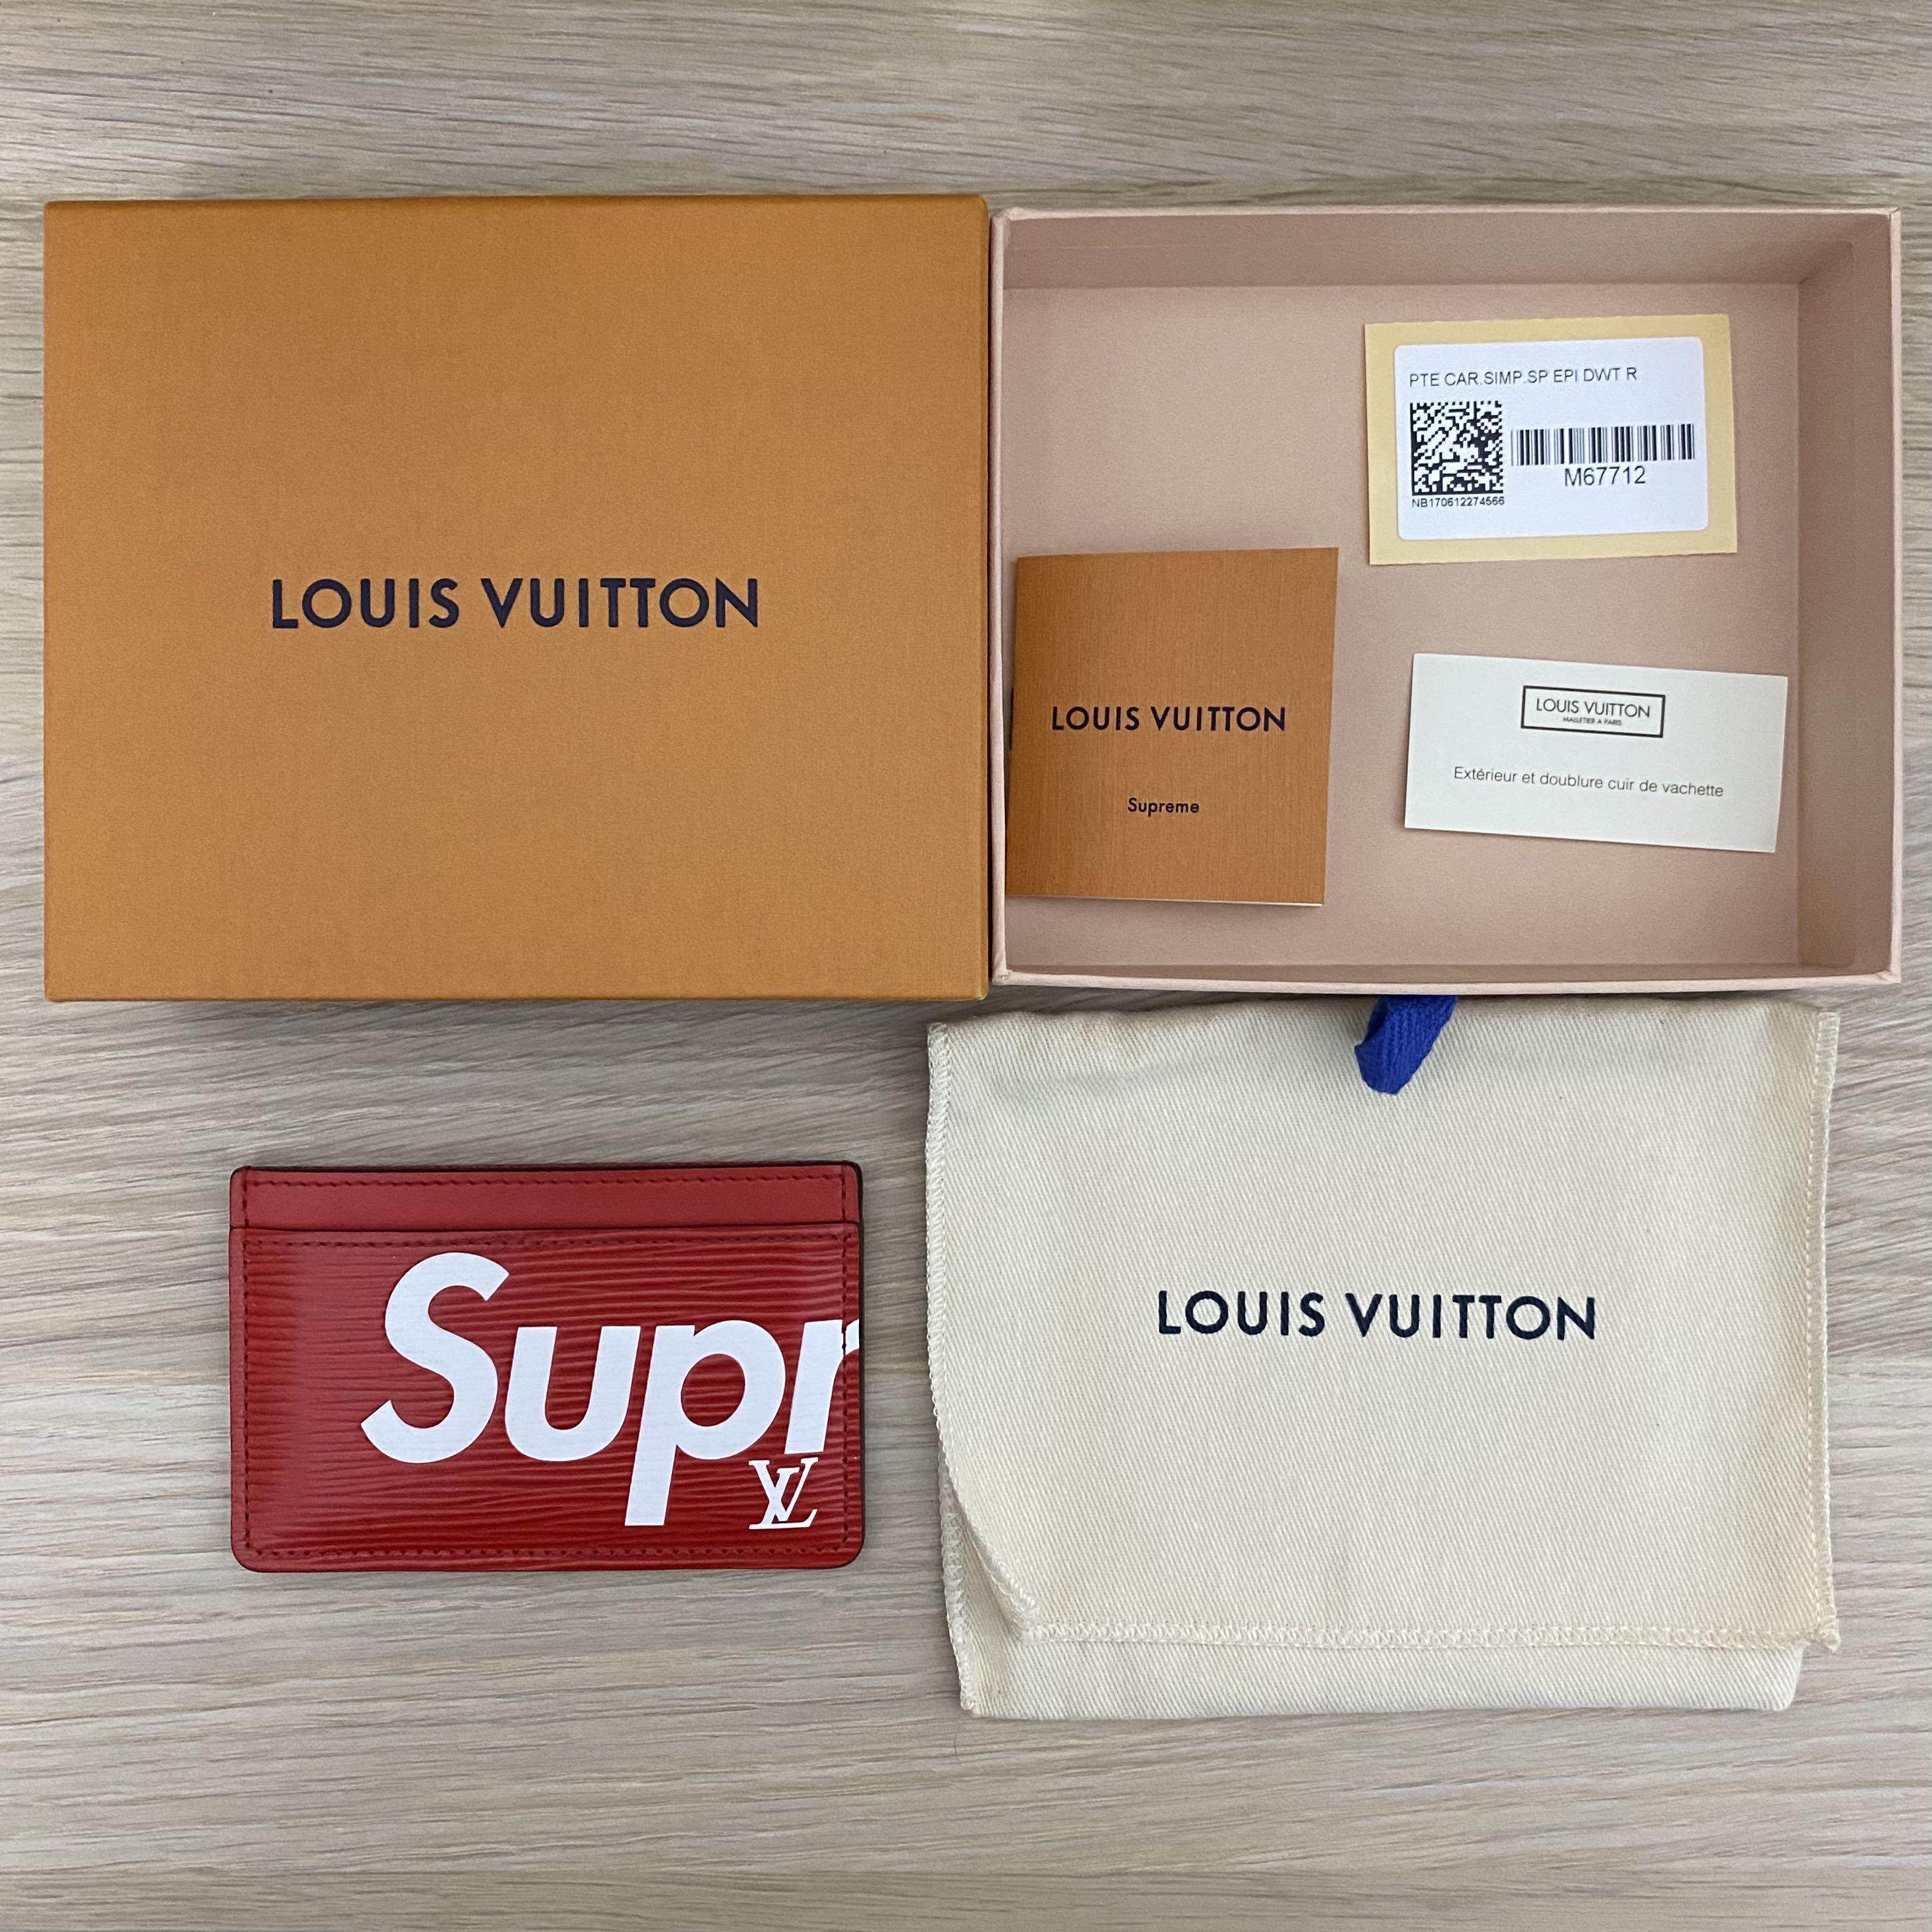 LOUIS VUITTON Porte Carte Simple Card Case Limited Edition Supreme M67712